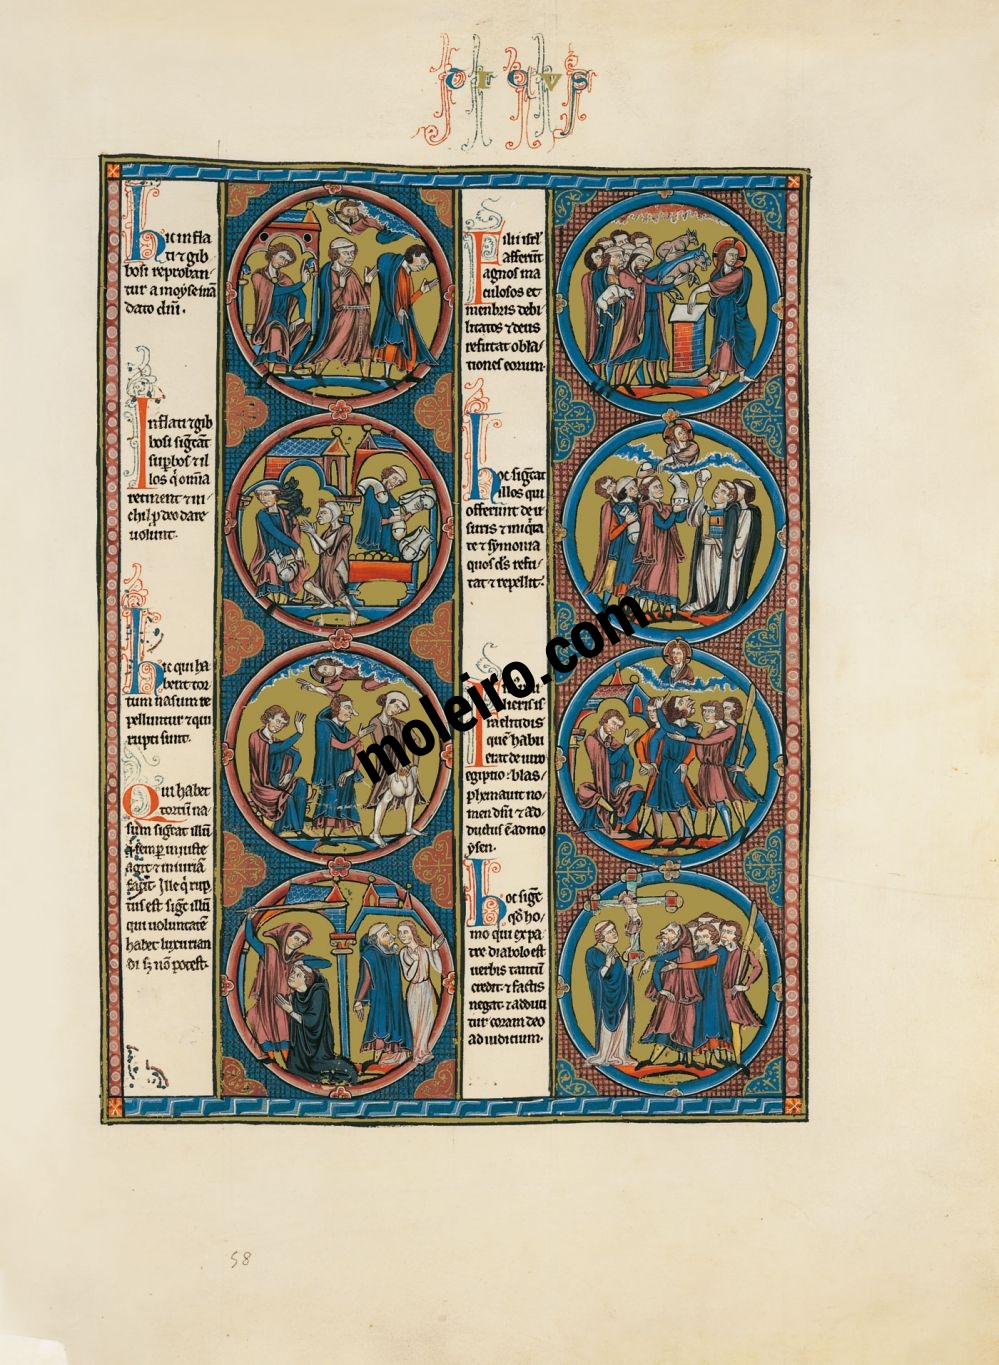 Die Bibel Ludwigs des Heiligen Bd.1, f. 58r